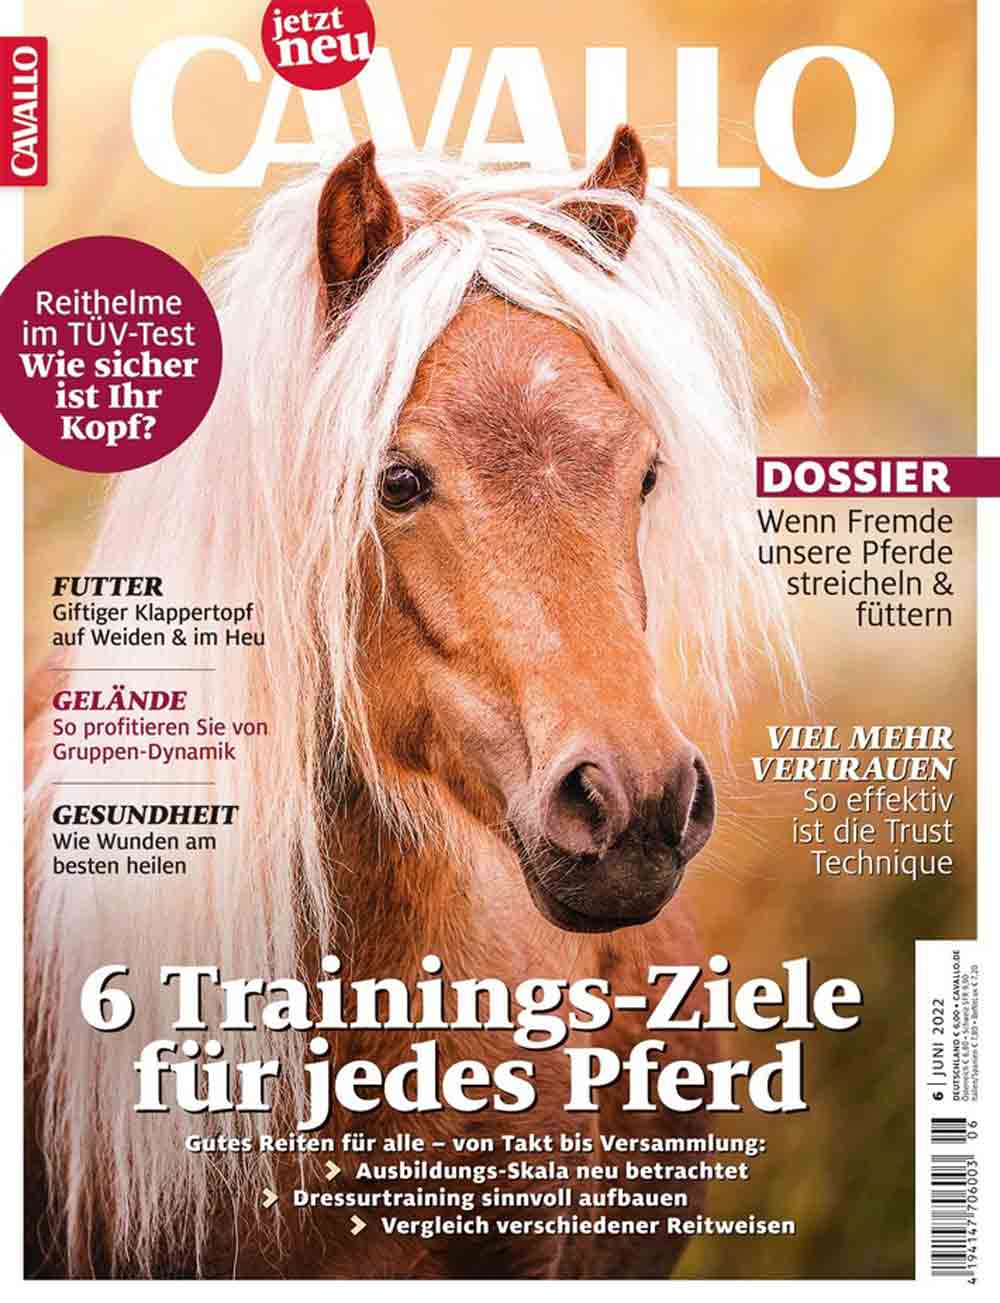 Magazin Cavallo will sensibilisieren, Spaziergänger bringen sich selbst und Pferde auf der Weide häufig in Lebensgefahr